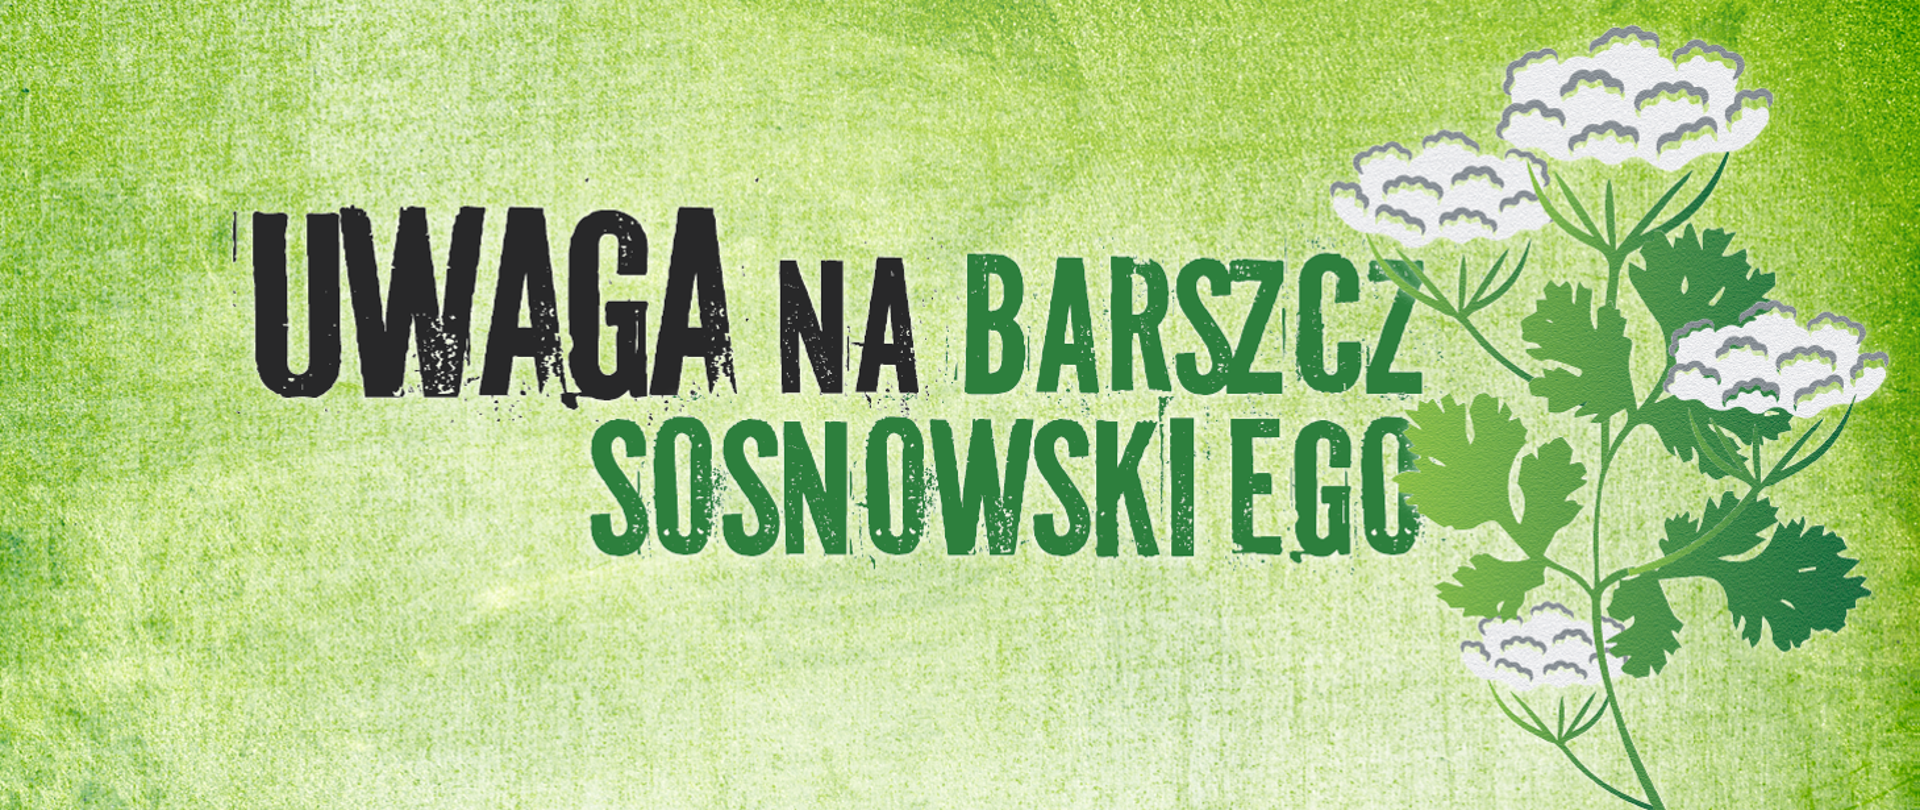 Napis "Uwaga na barszcz Sosnowskiego" razem z rysunkiem rośliny.